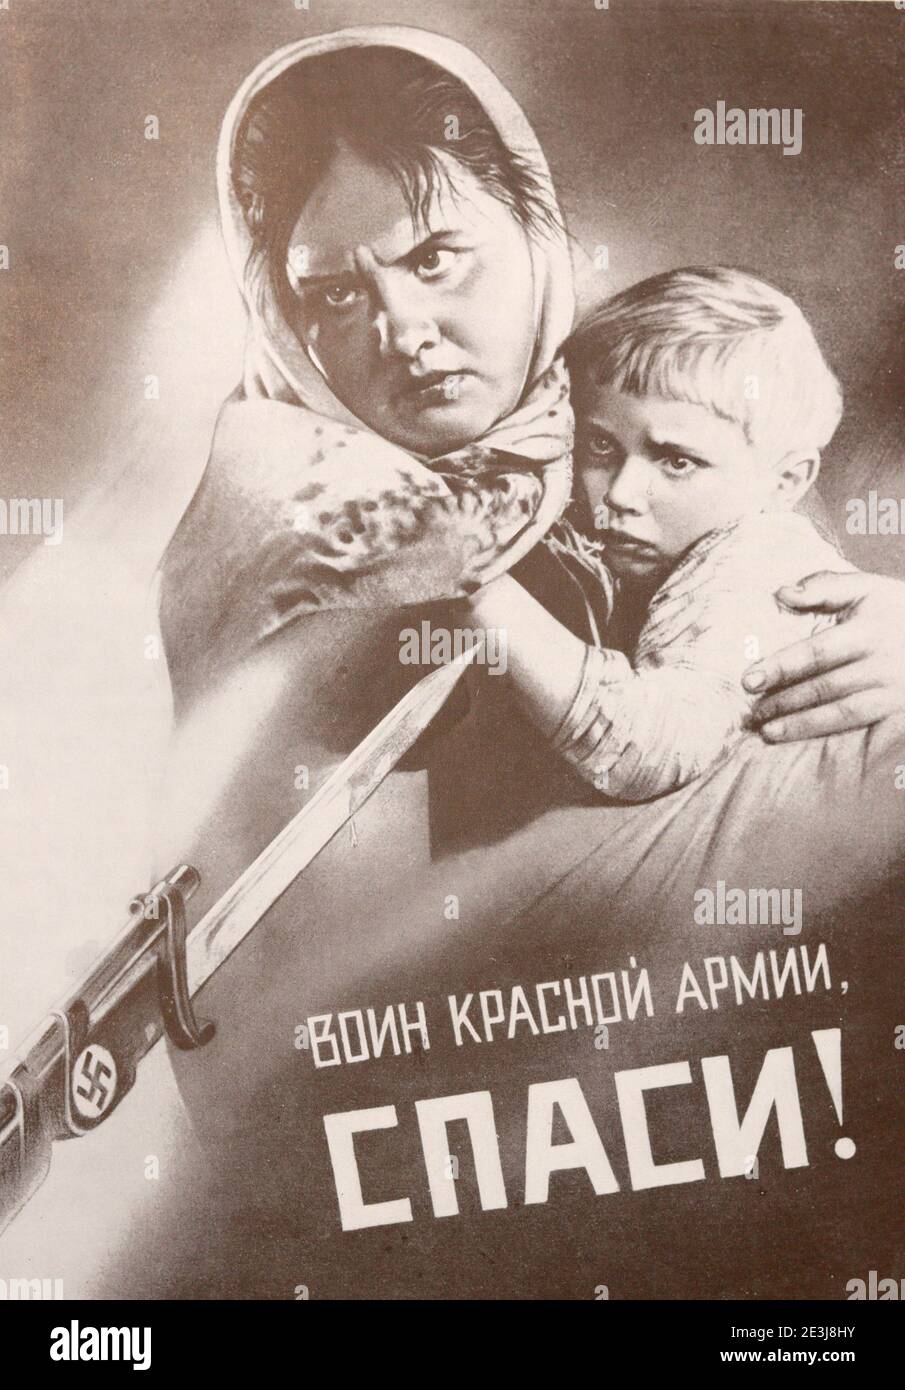 Manifesto sovietico Guerriero dell'Esercito Rosso, Salva! stampato nel 1941. Foto Stock